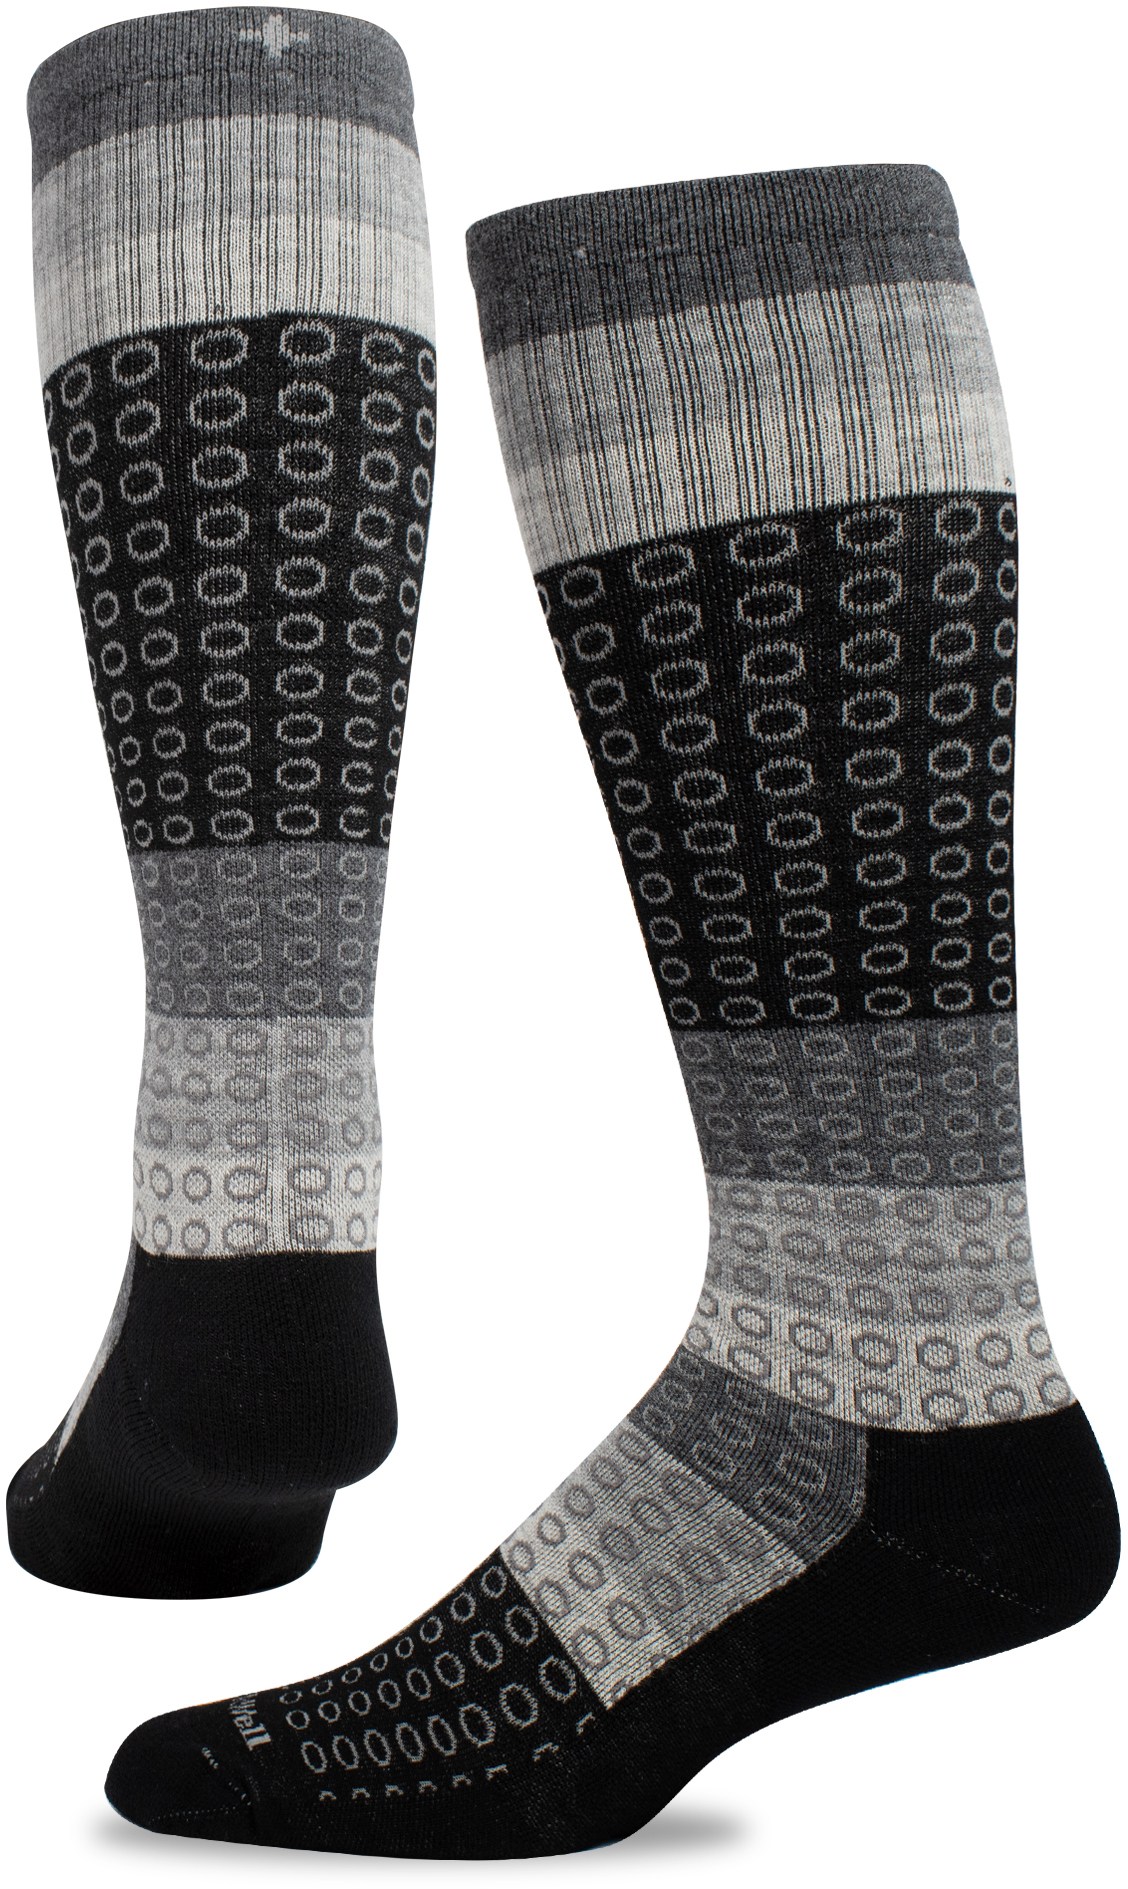 Компрессионные носки полного круга, широкие по размеру икры, женские Sockwell, черный forest full circle